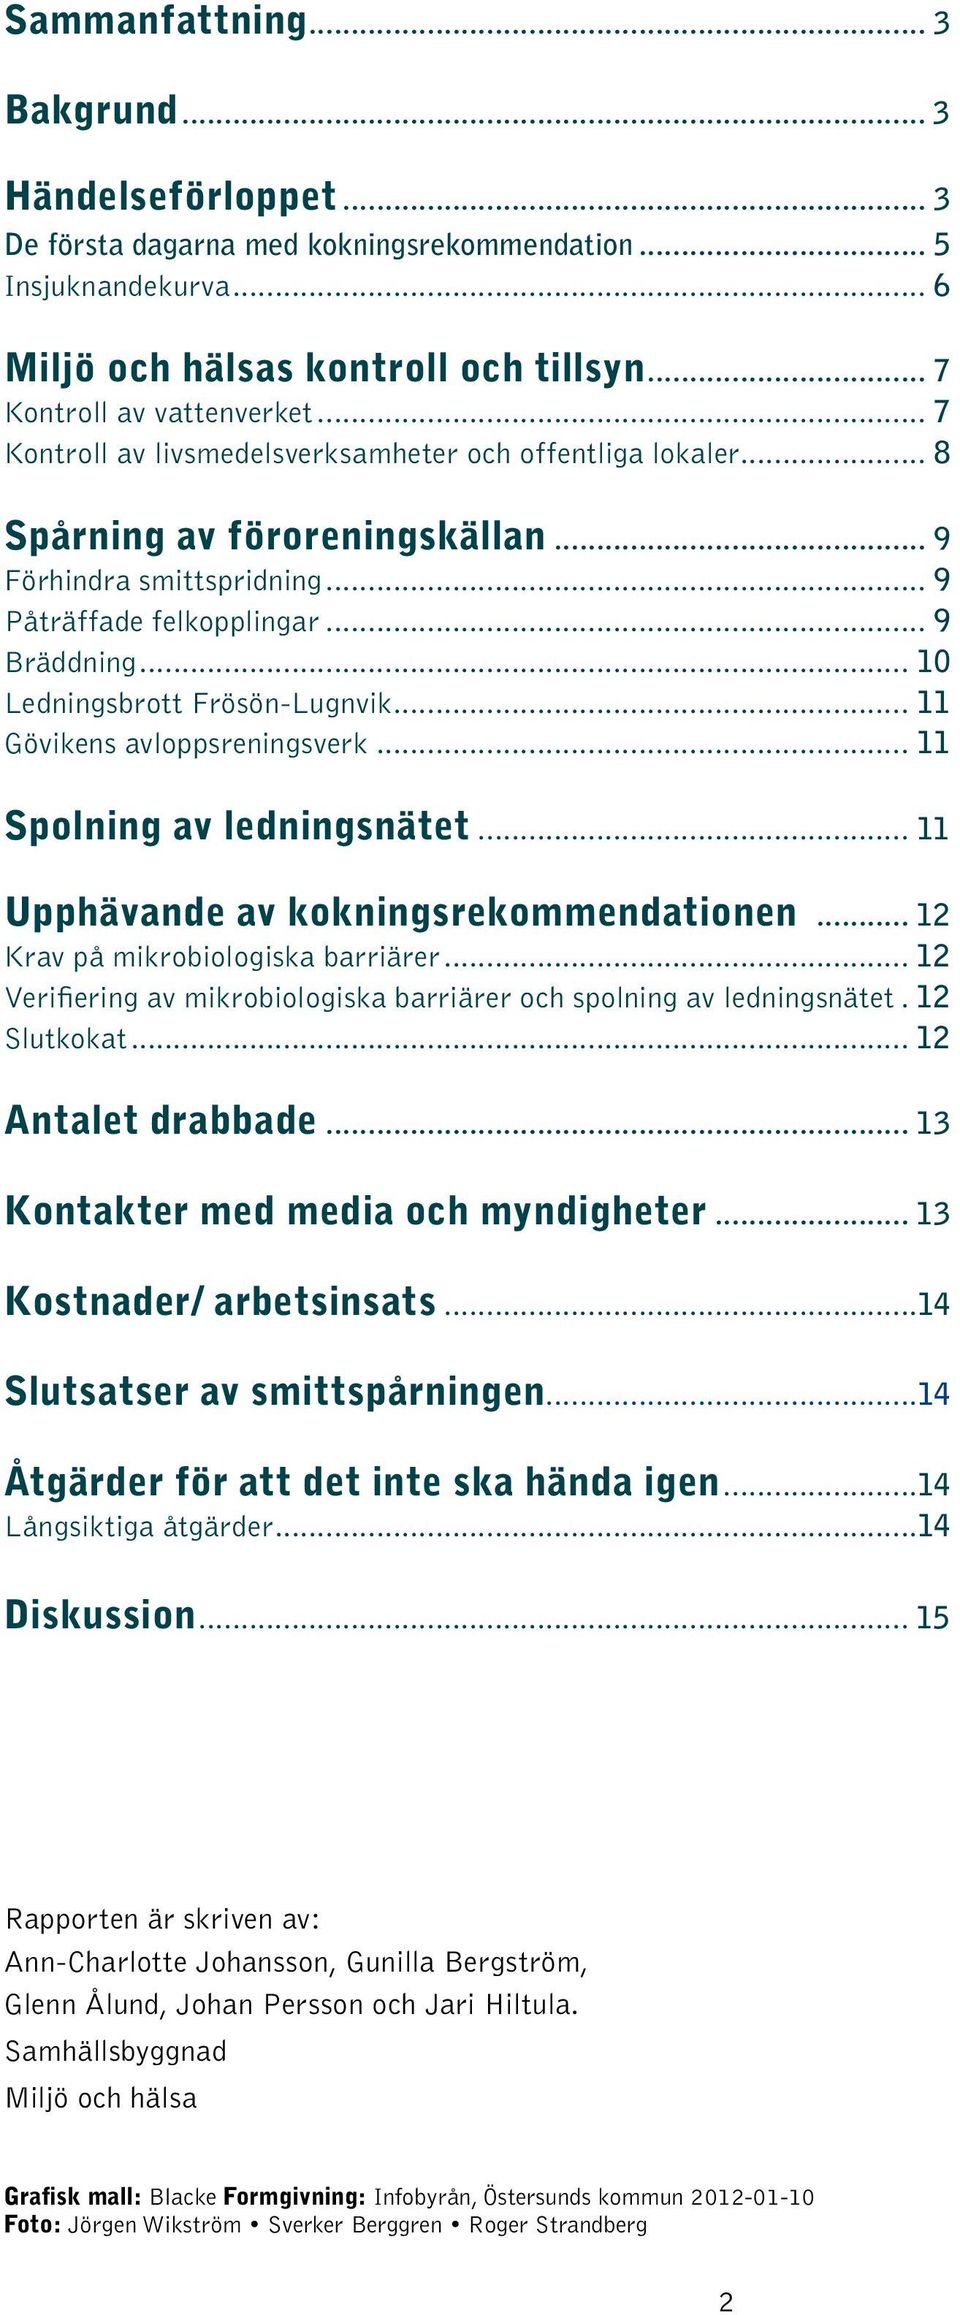 .. 10 Ledningsbrott Frösön-Lugnvik... 11 Gövikens avloppsreningsverk... 11 Spolning av ledningsnätet... 11 Upphävande av kokningsrekommendationen... 12 Krav på mikrobiologiska barriärer.